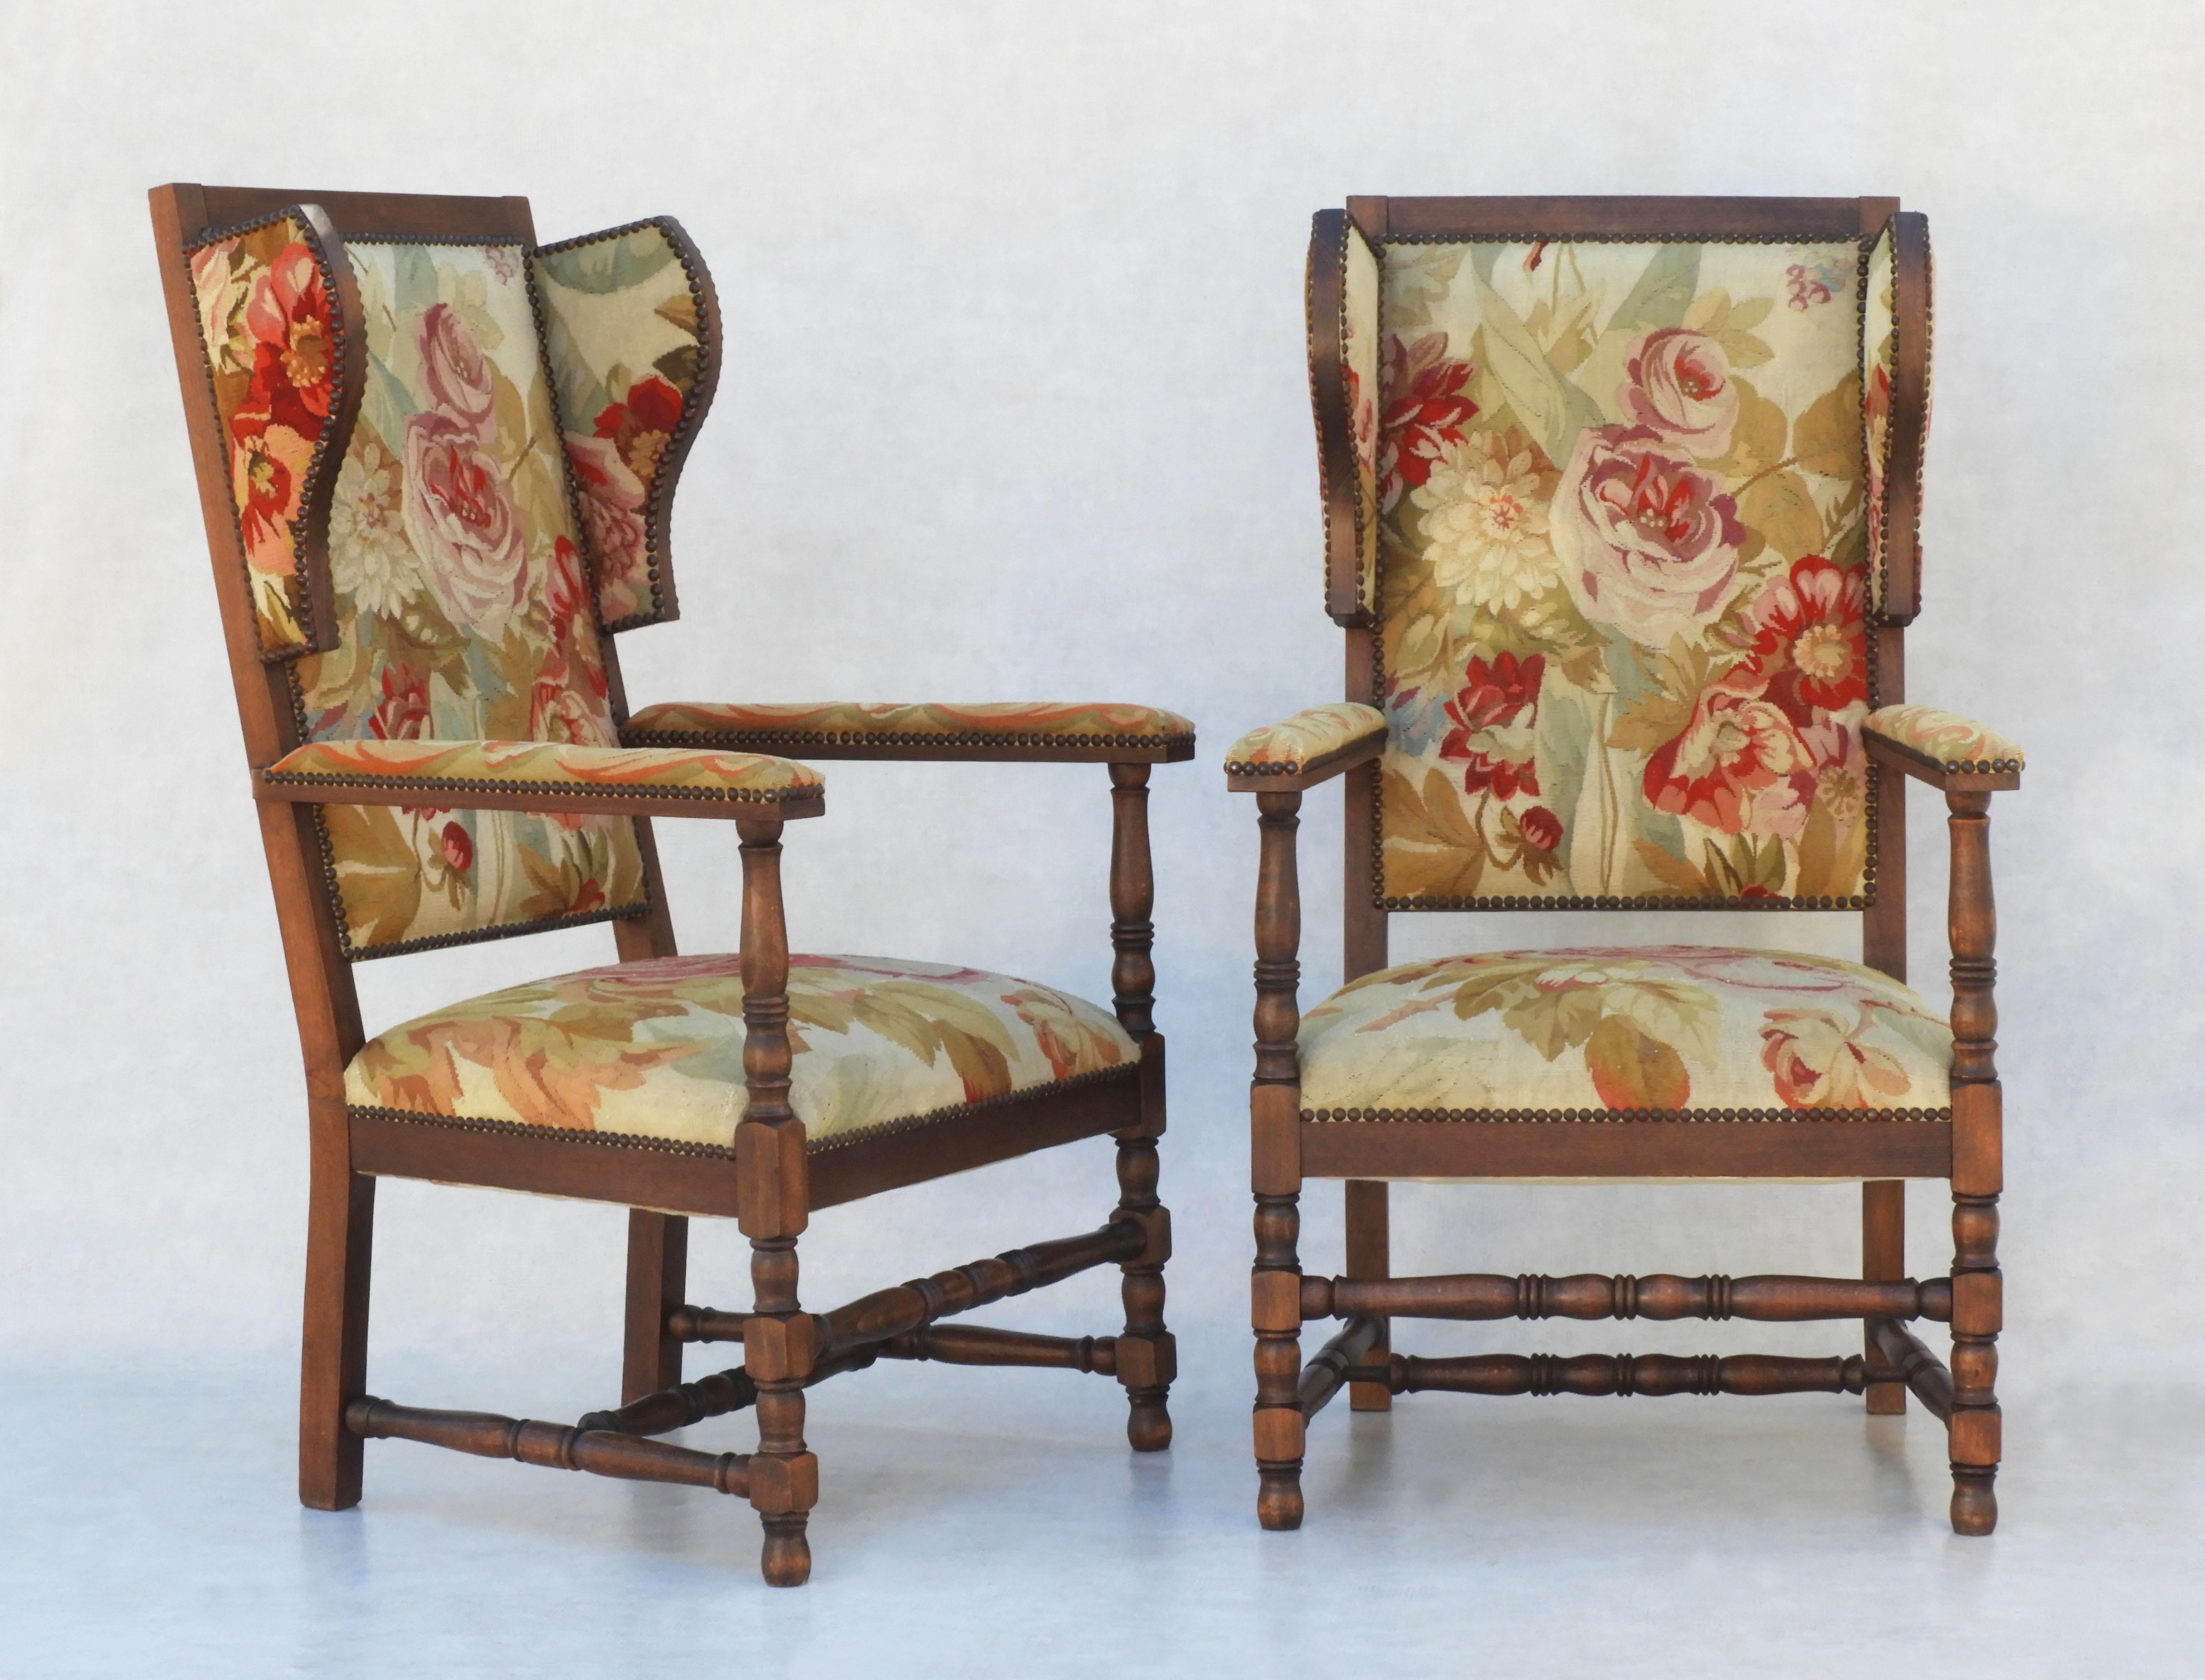 Charmante paire de chaises à oreilles de style provincial français. Un duo inhabituel de fauteuils en chêne recouverts d'une tapisserie florale sur le thème de la rose. Tous originaux et considérés comme une paire tout à fait unique. En bon état